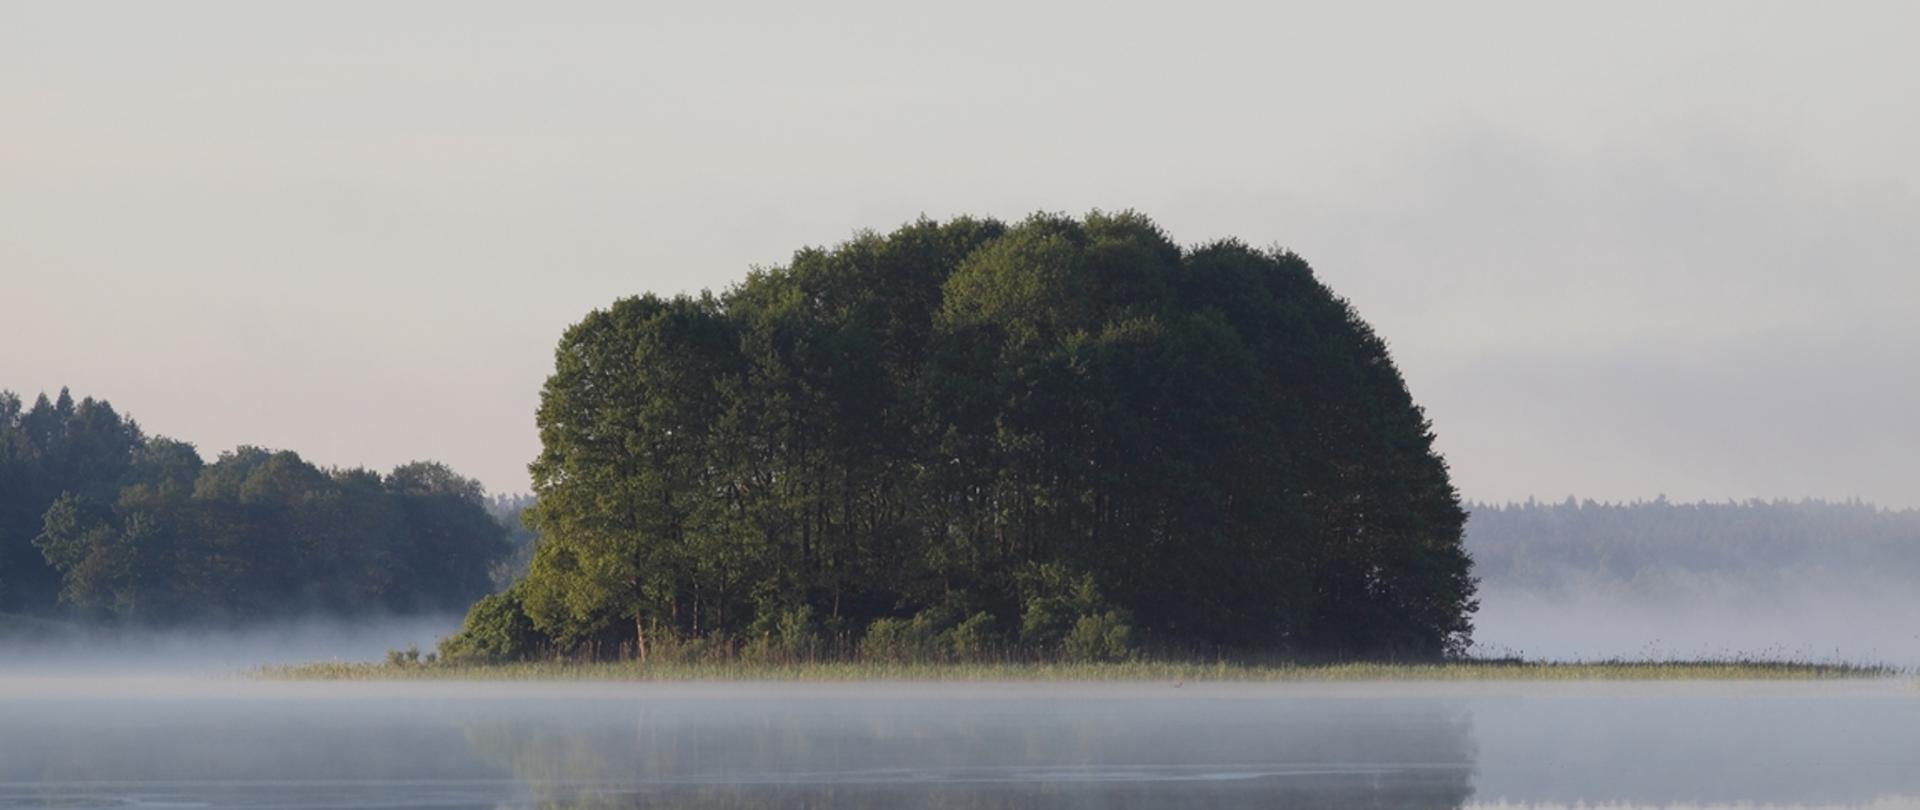 Jezioro spowite mglą. W oddali na środku jest wyspa porośnięta drzewami liściastymi.